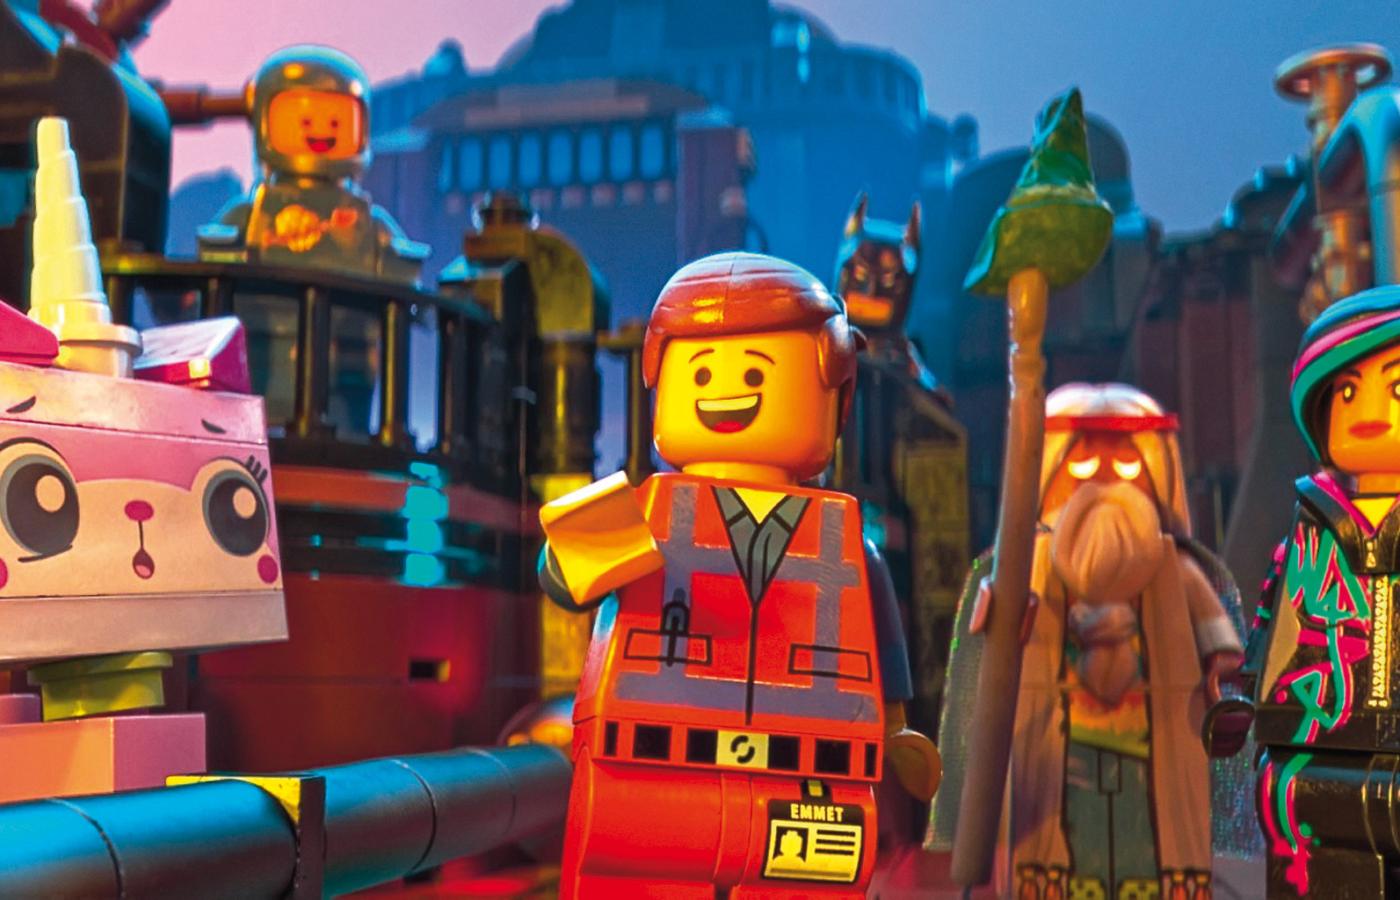 Kadr z filmu „Lego. Przygoda”.